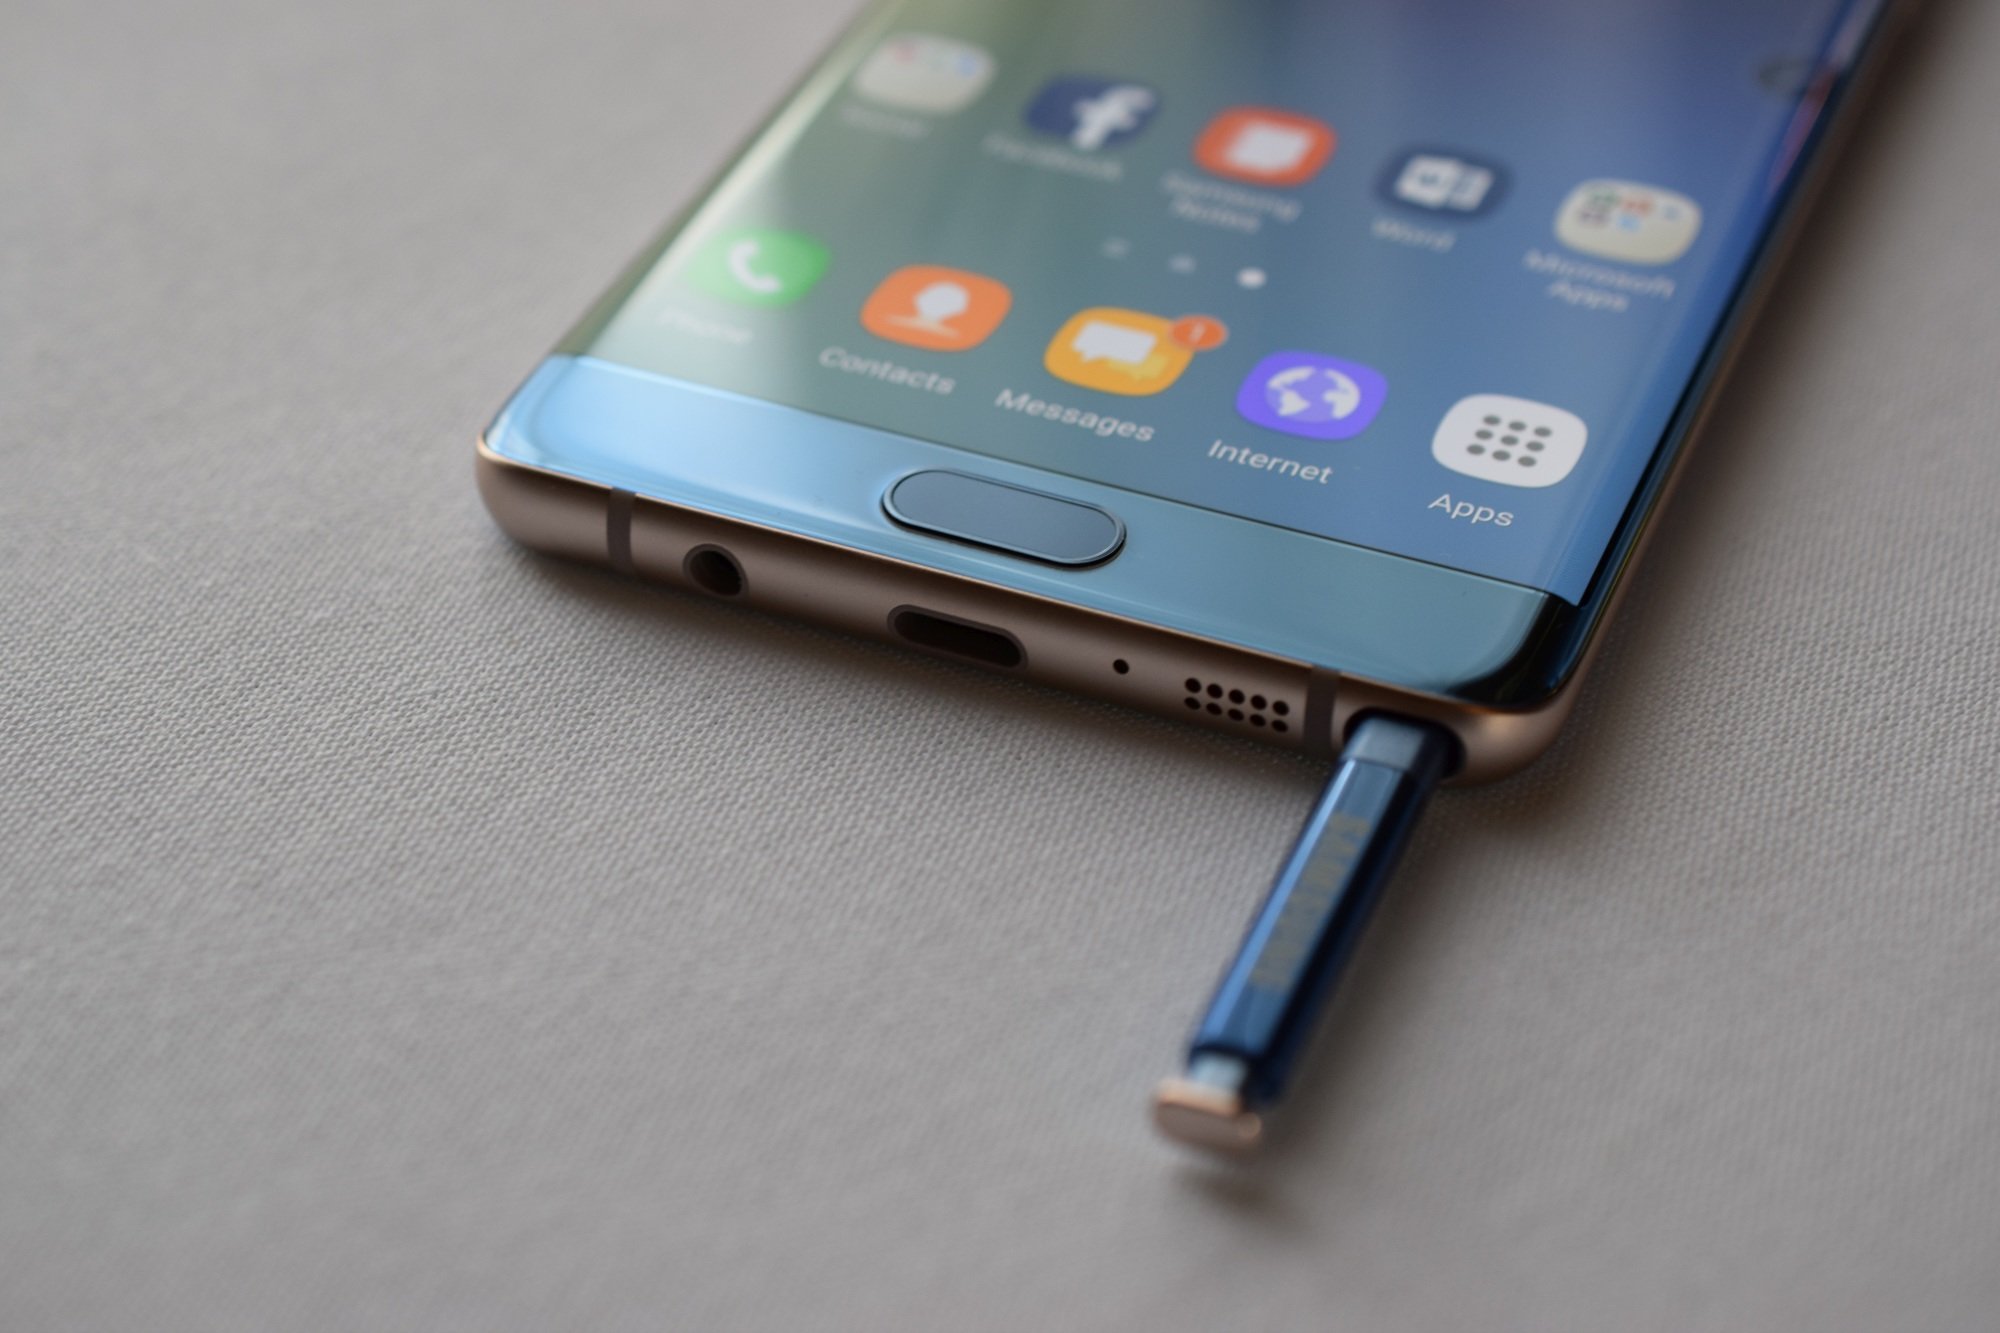 Οι δυνατότητες του S Pen του Galaxy Note 9 επιβεβαιώνονται μέσω του...Galaxy Tab S4